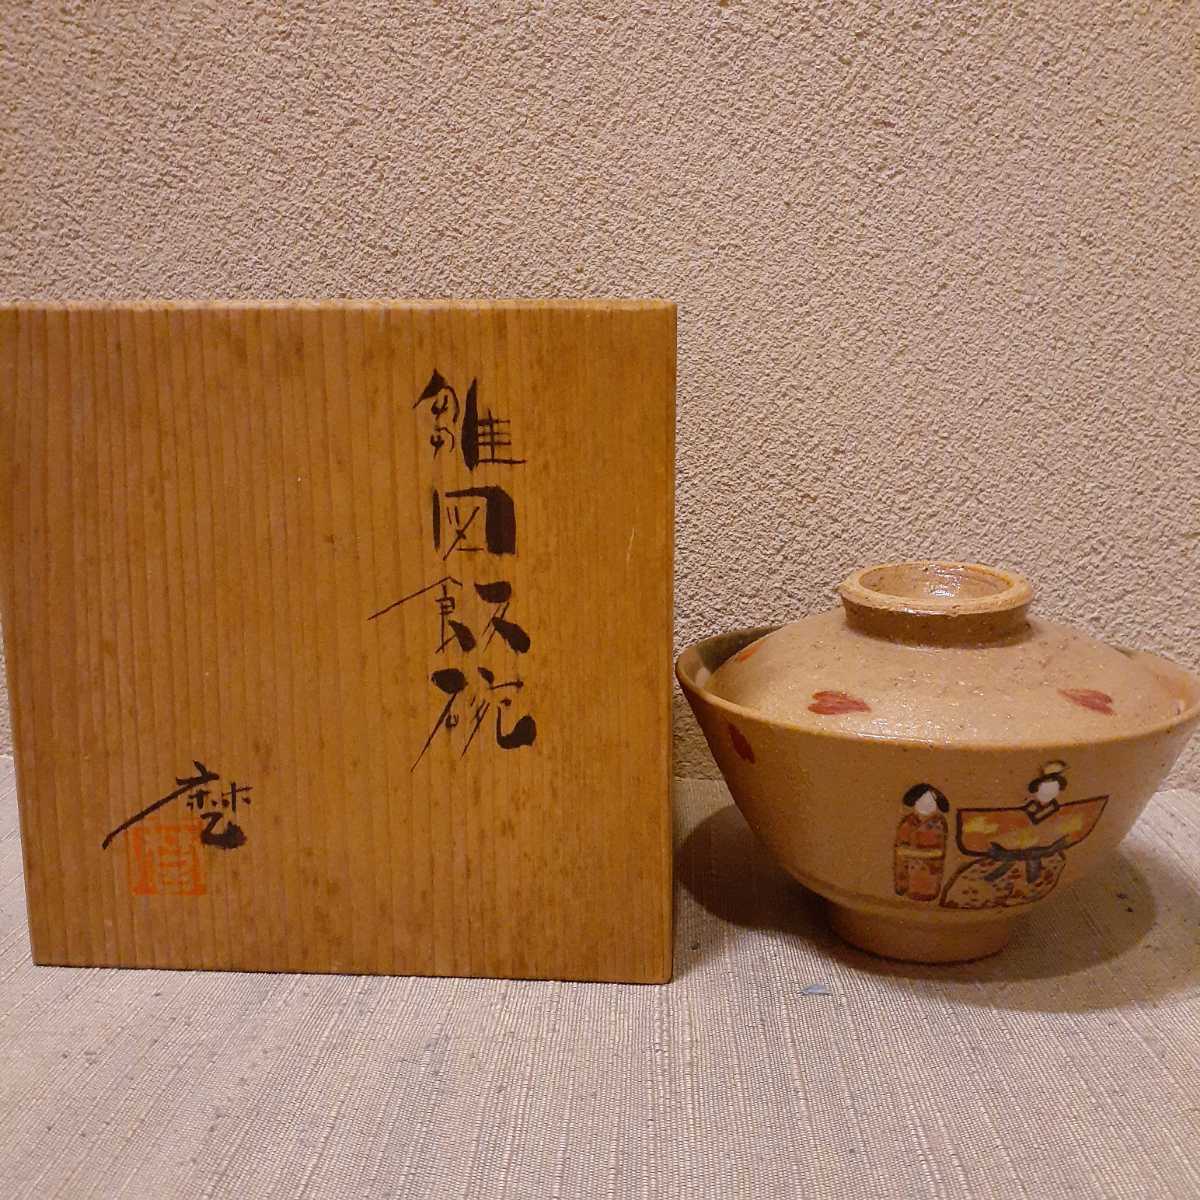 चाय का कटोरा हिना गुड़िया खड़ी गुड़िया लगभग। 12.2 सेमी x 8 सेमी, जापानी चीनी मिट्टी की चीज़ें, सामान्य तौर पर चीनी मिट्टी की चीज़ें, अन्य